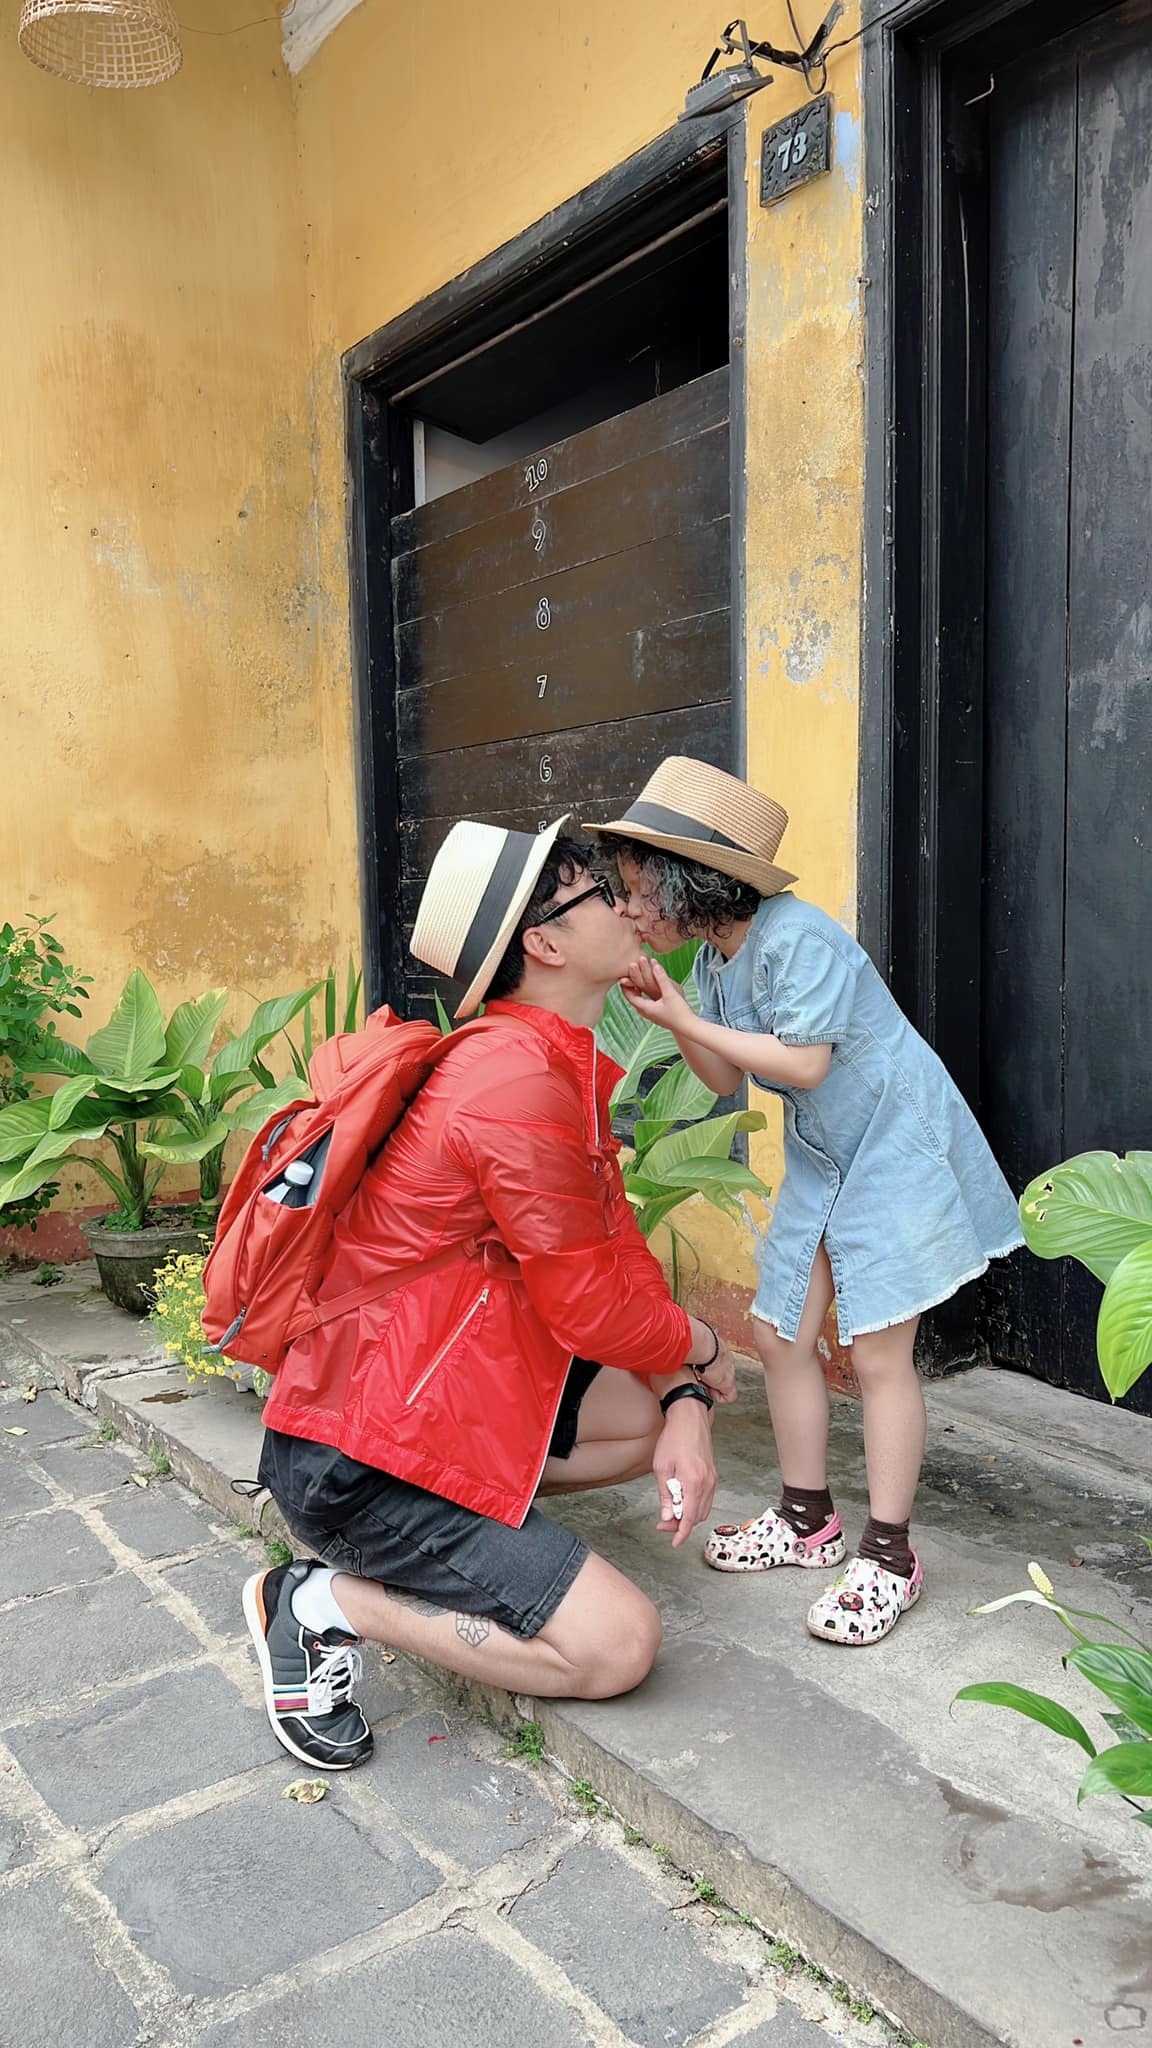 Sao Việt hớn hở khoe quà Valentine, bất ngờ nhất là màn khóa môi của 'ông chú' Tấn Trường